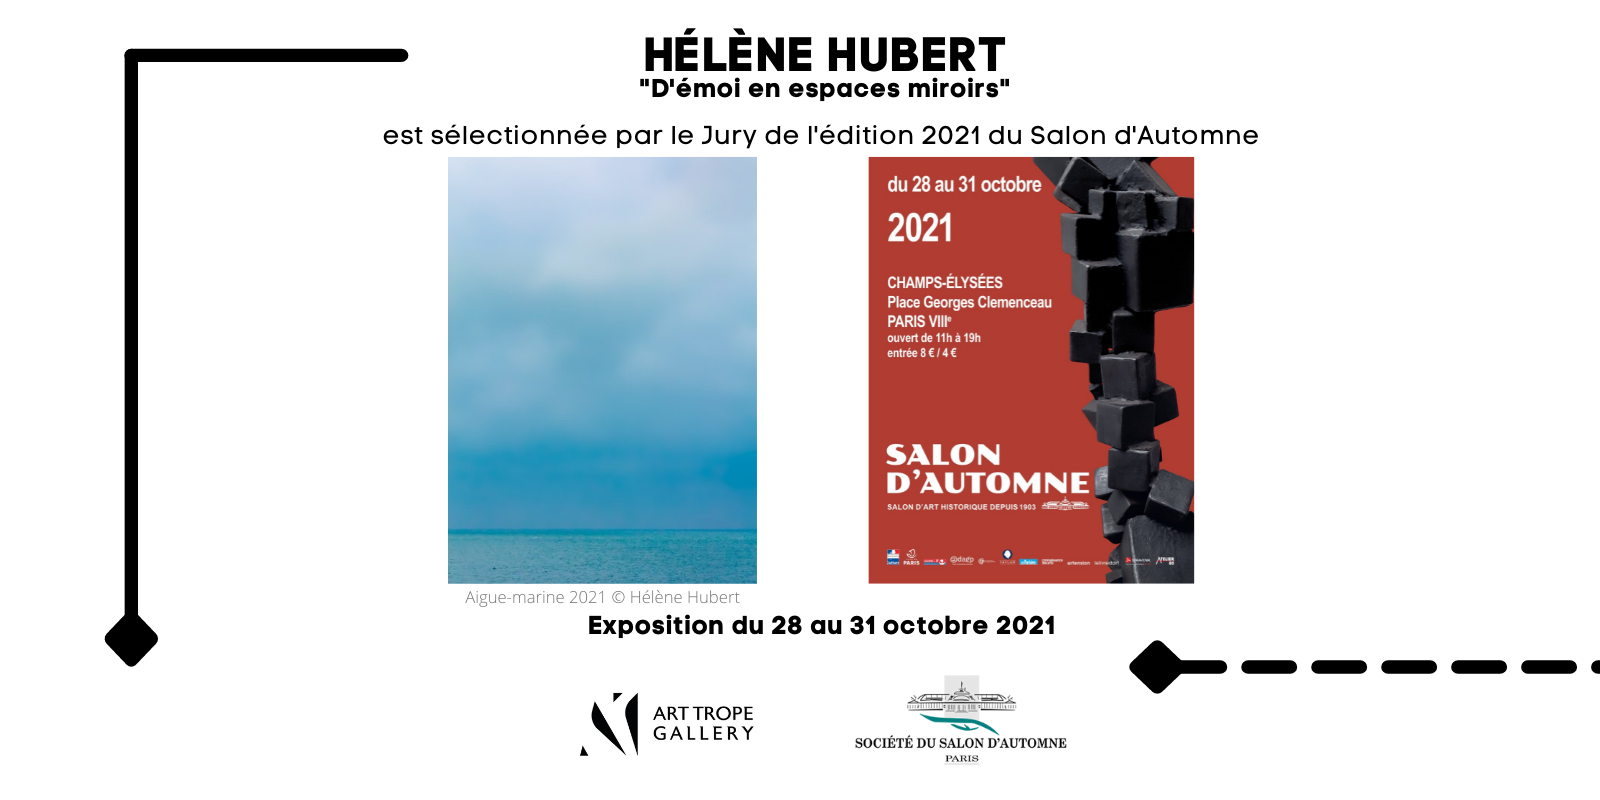 Exposition collective - Salon d'Automne - Hélène Hubert - Paris - France